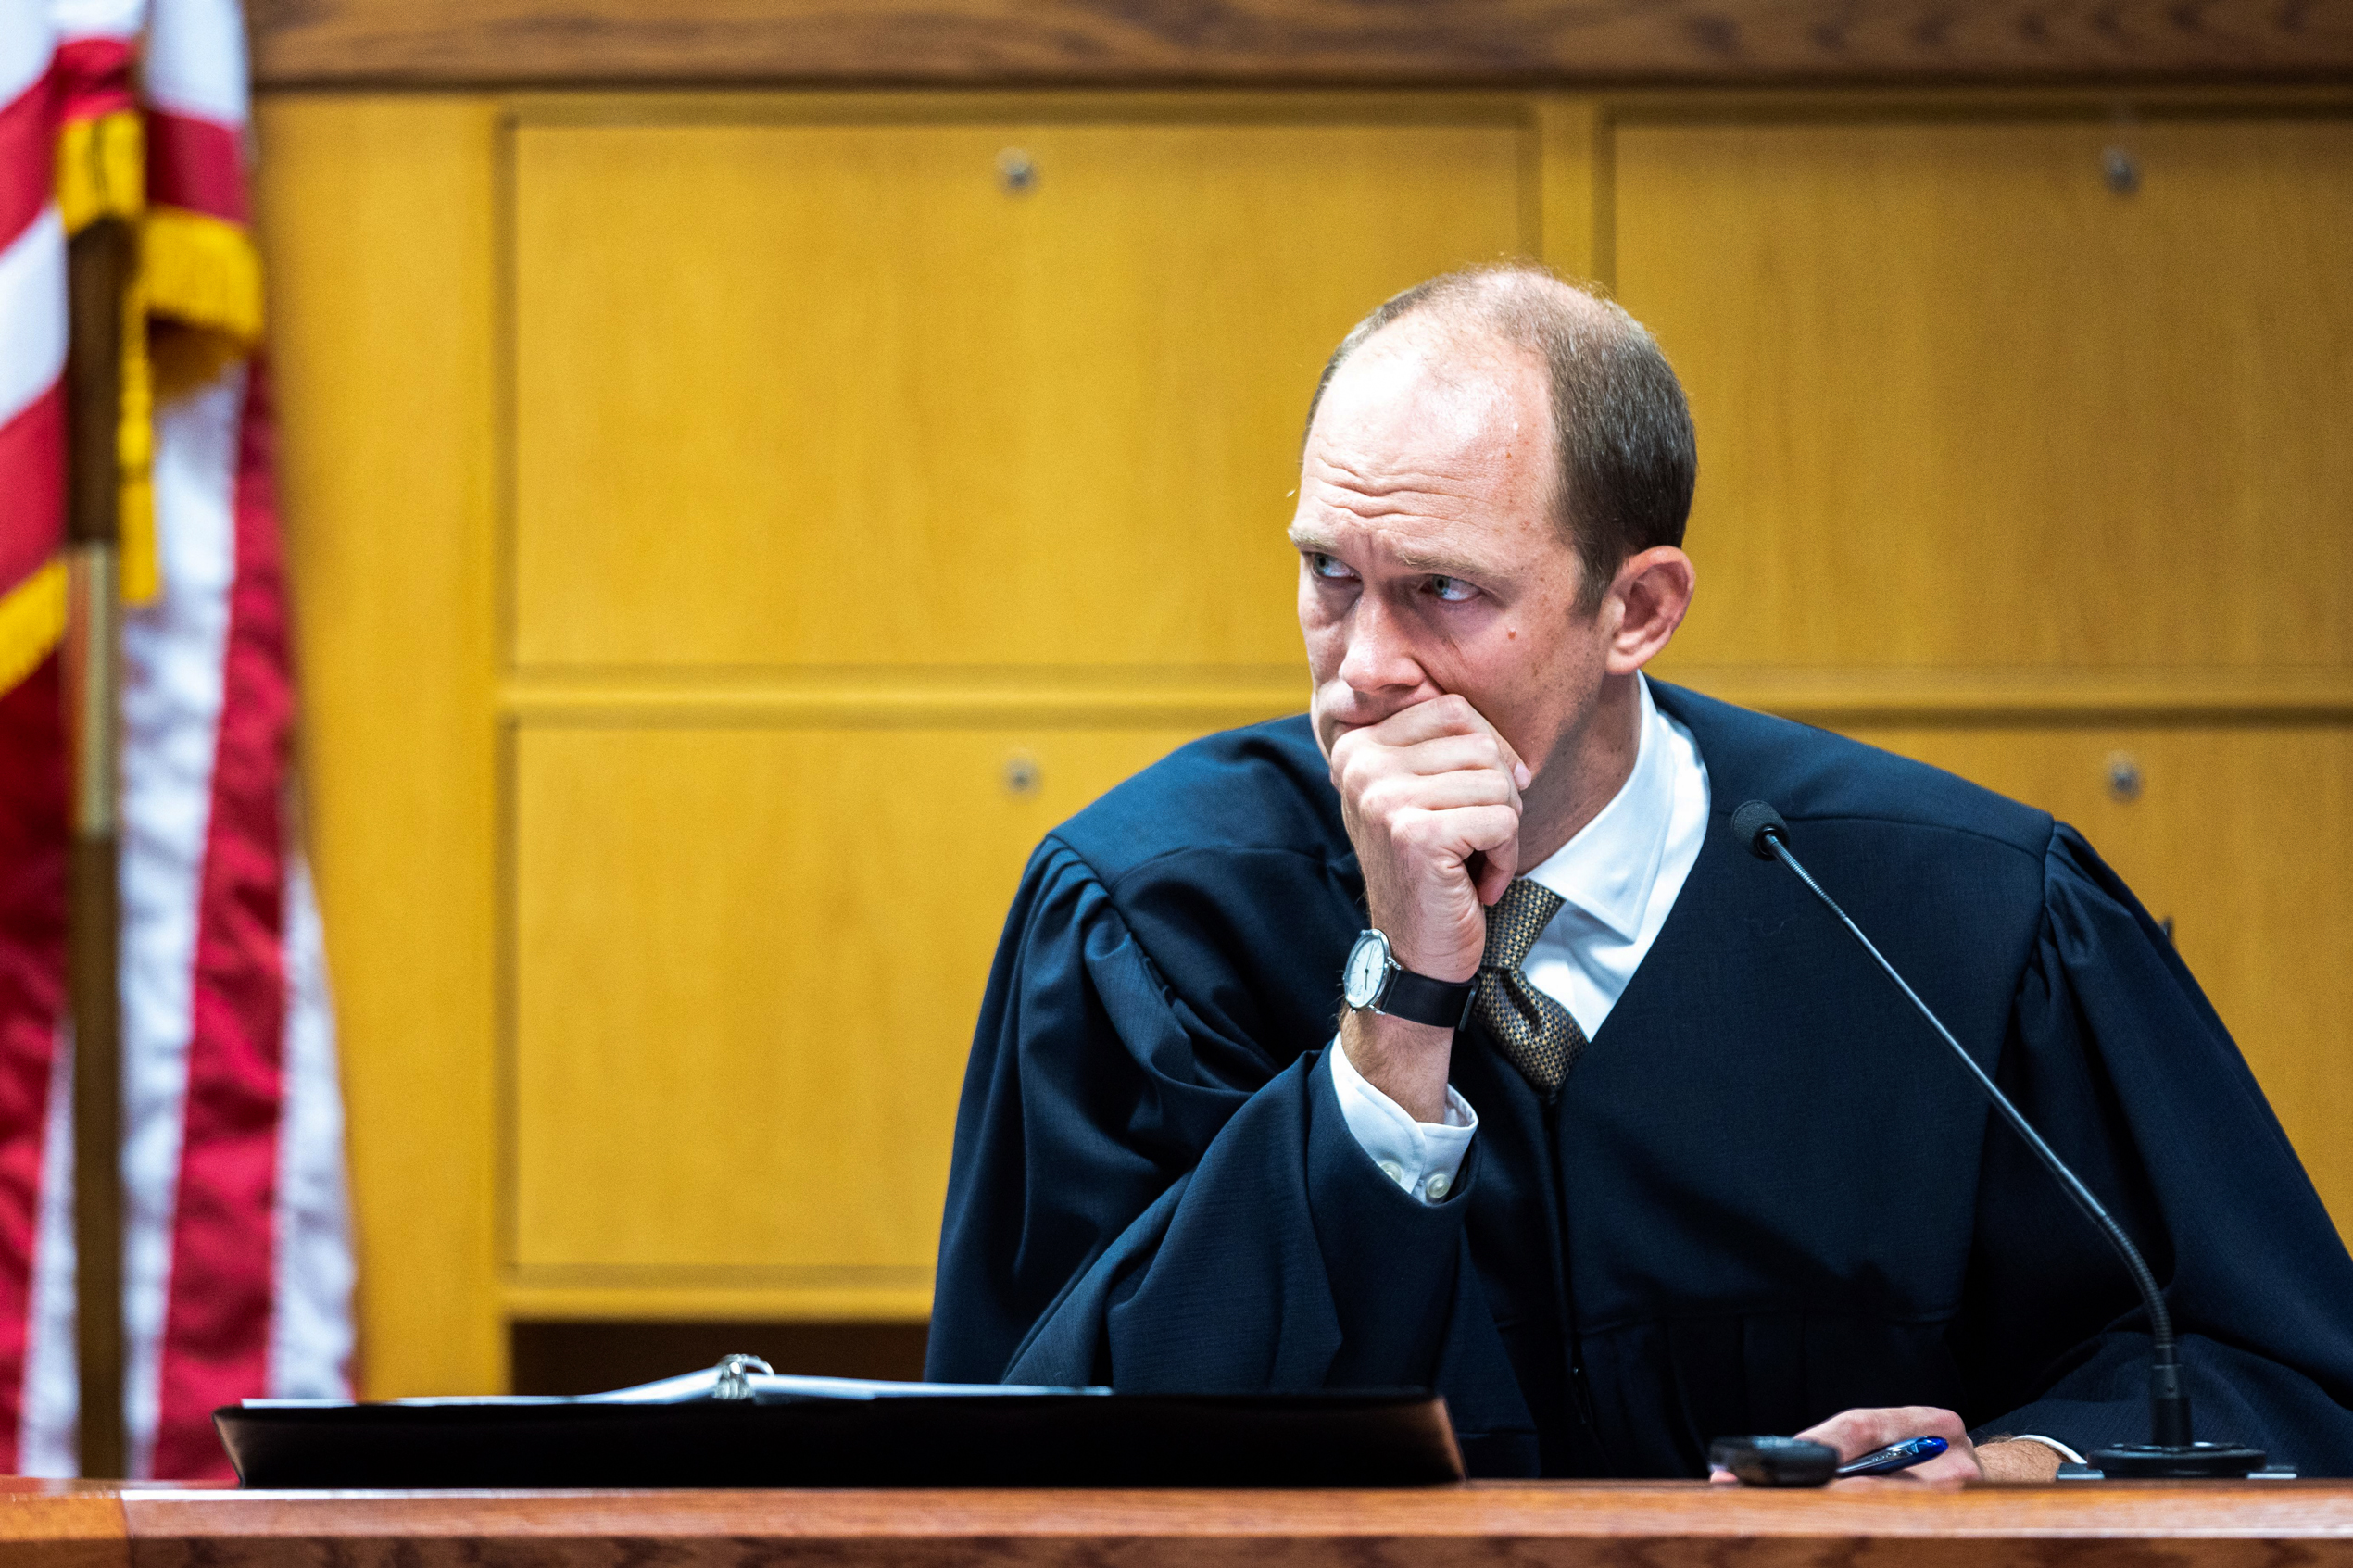 Le procès de Trump pourrait devoir être déplacé, annonce le juge